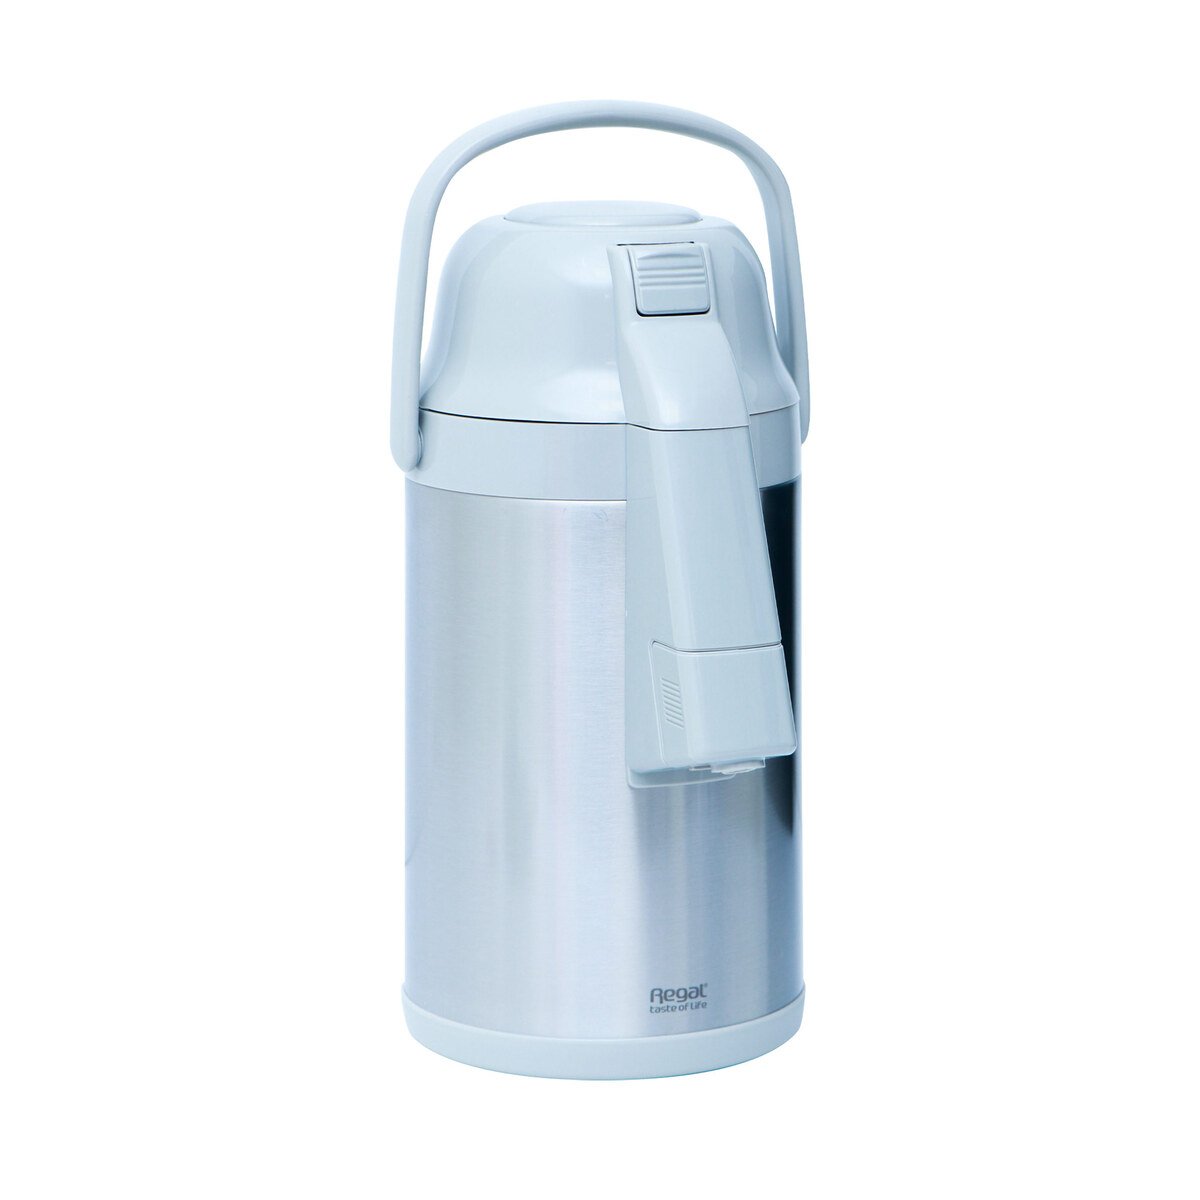 Buy Regal Airpot Flask TSA-30C/OC 3.0Ltr Online at Best Price | Flasks | Lulu KSA in Saudi Arabia